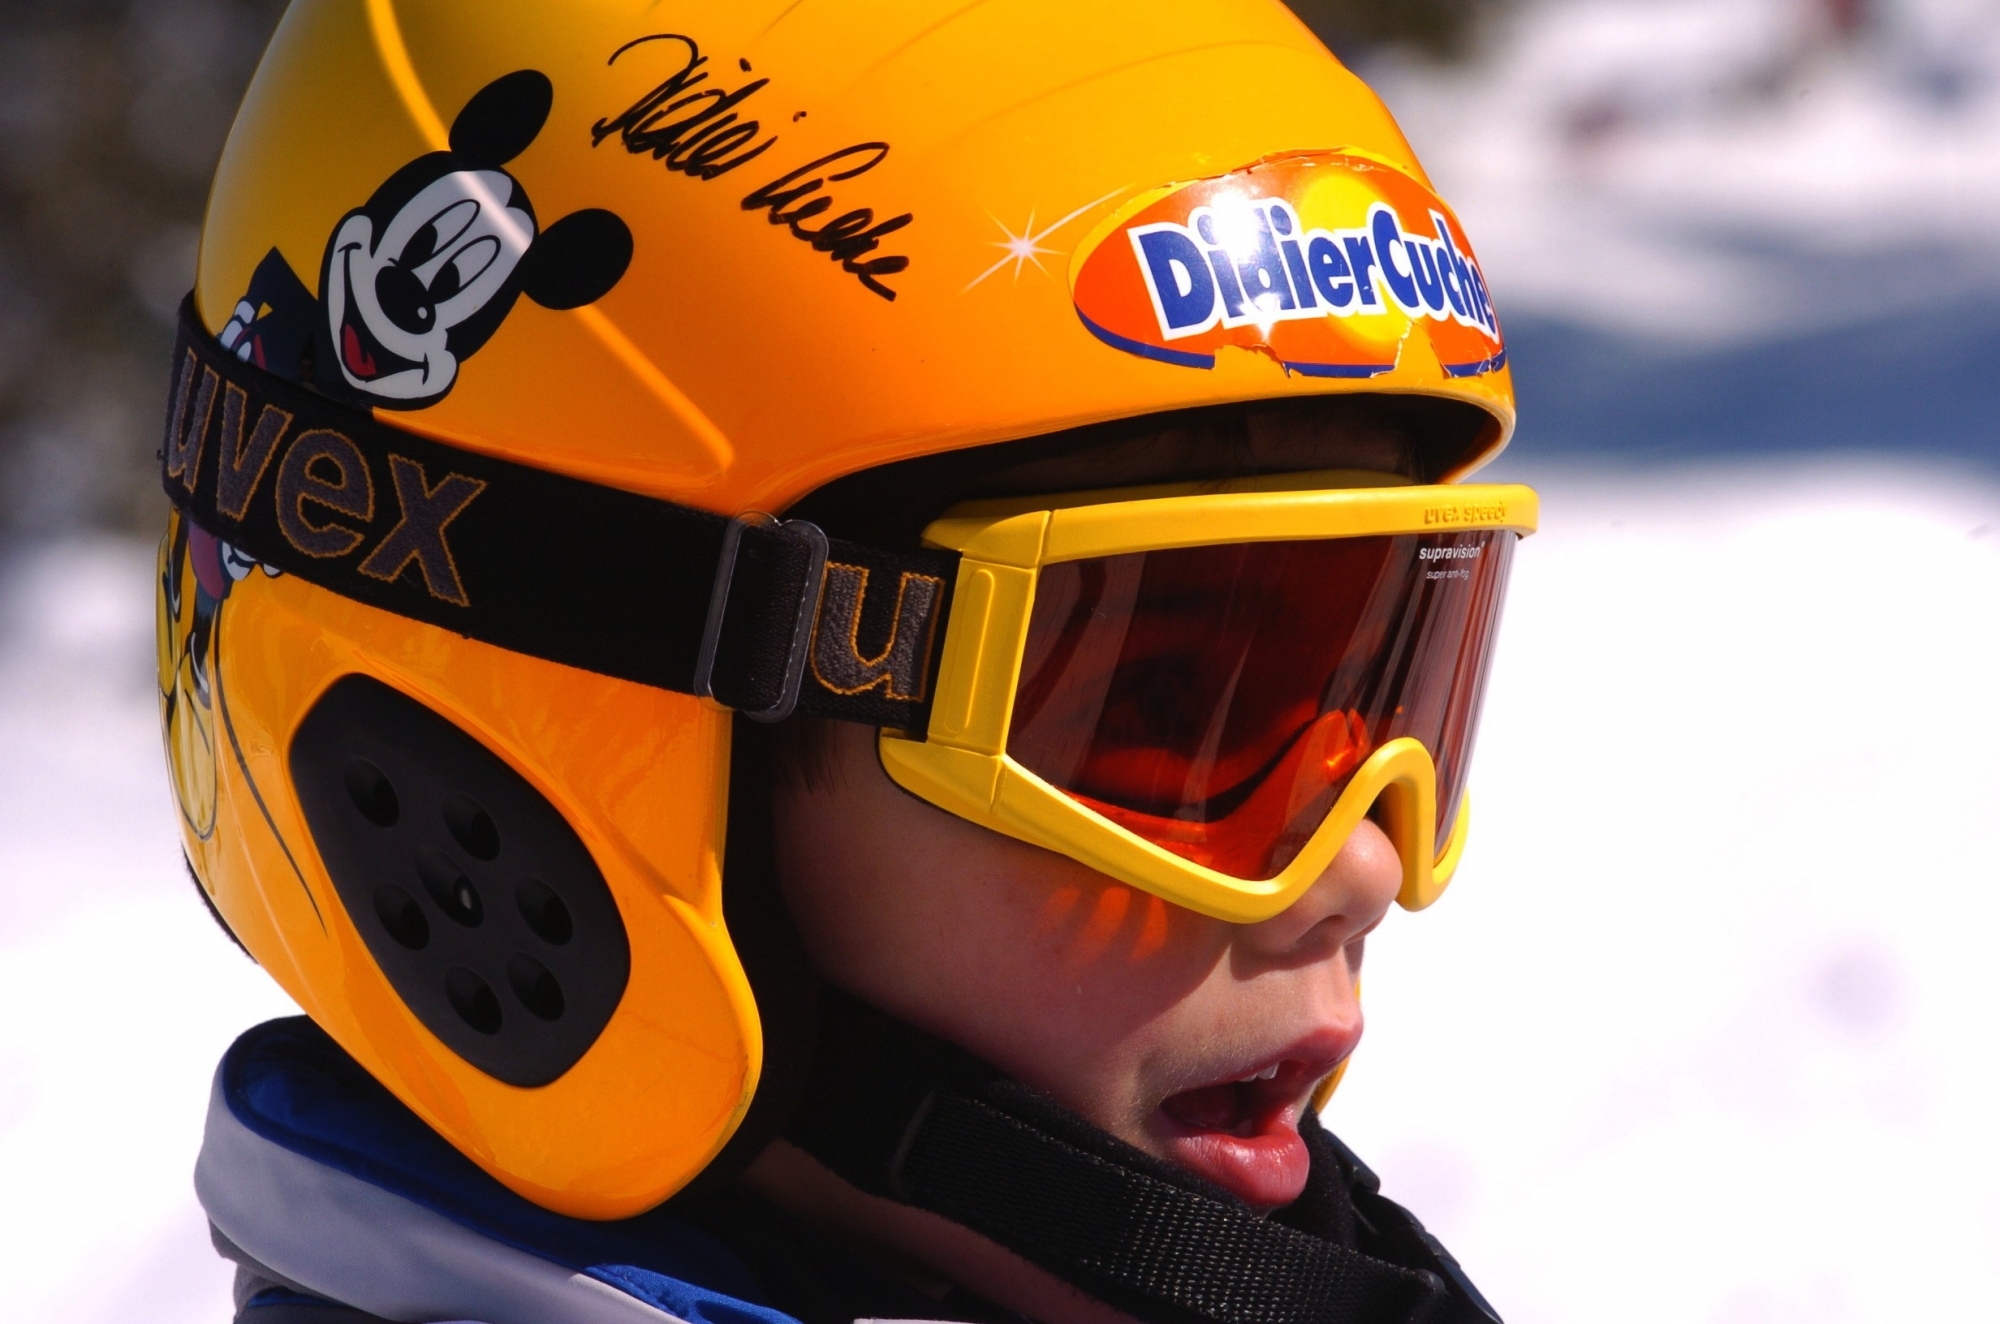 Les jeunes skieurs devront attendre le mois de mars pour prendre part aux prochaines manches de la Coupe Didier Cuche.